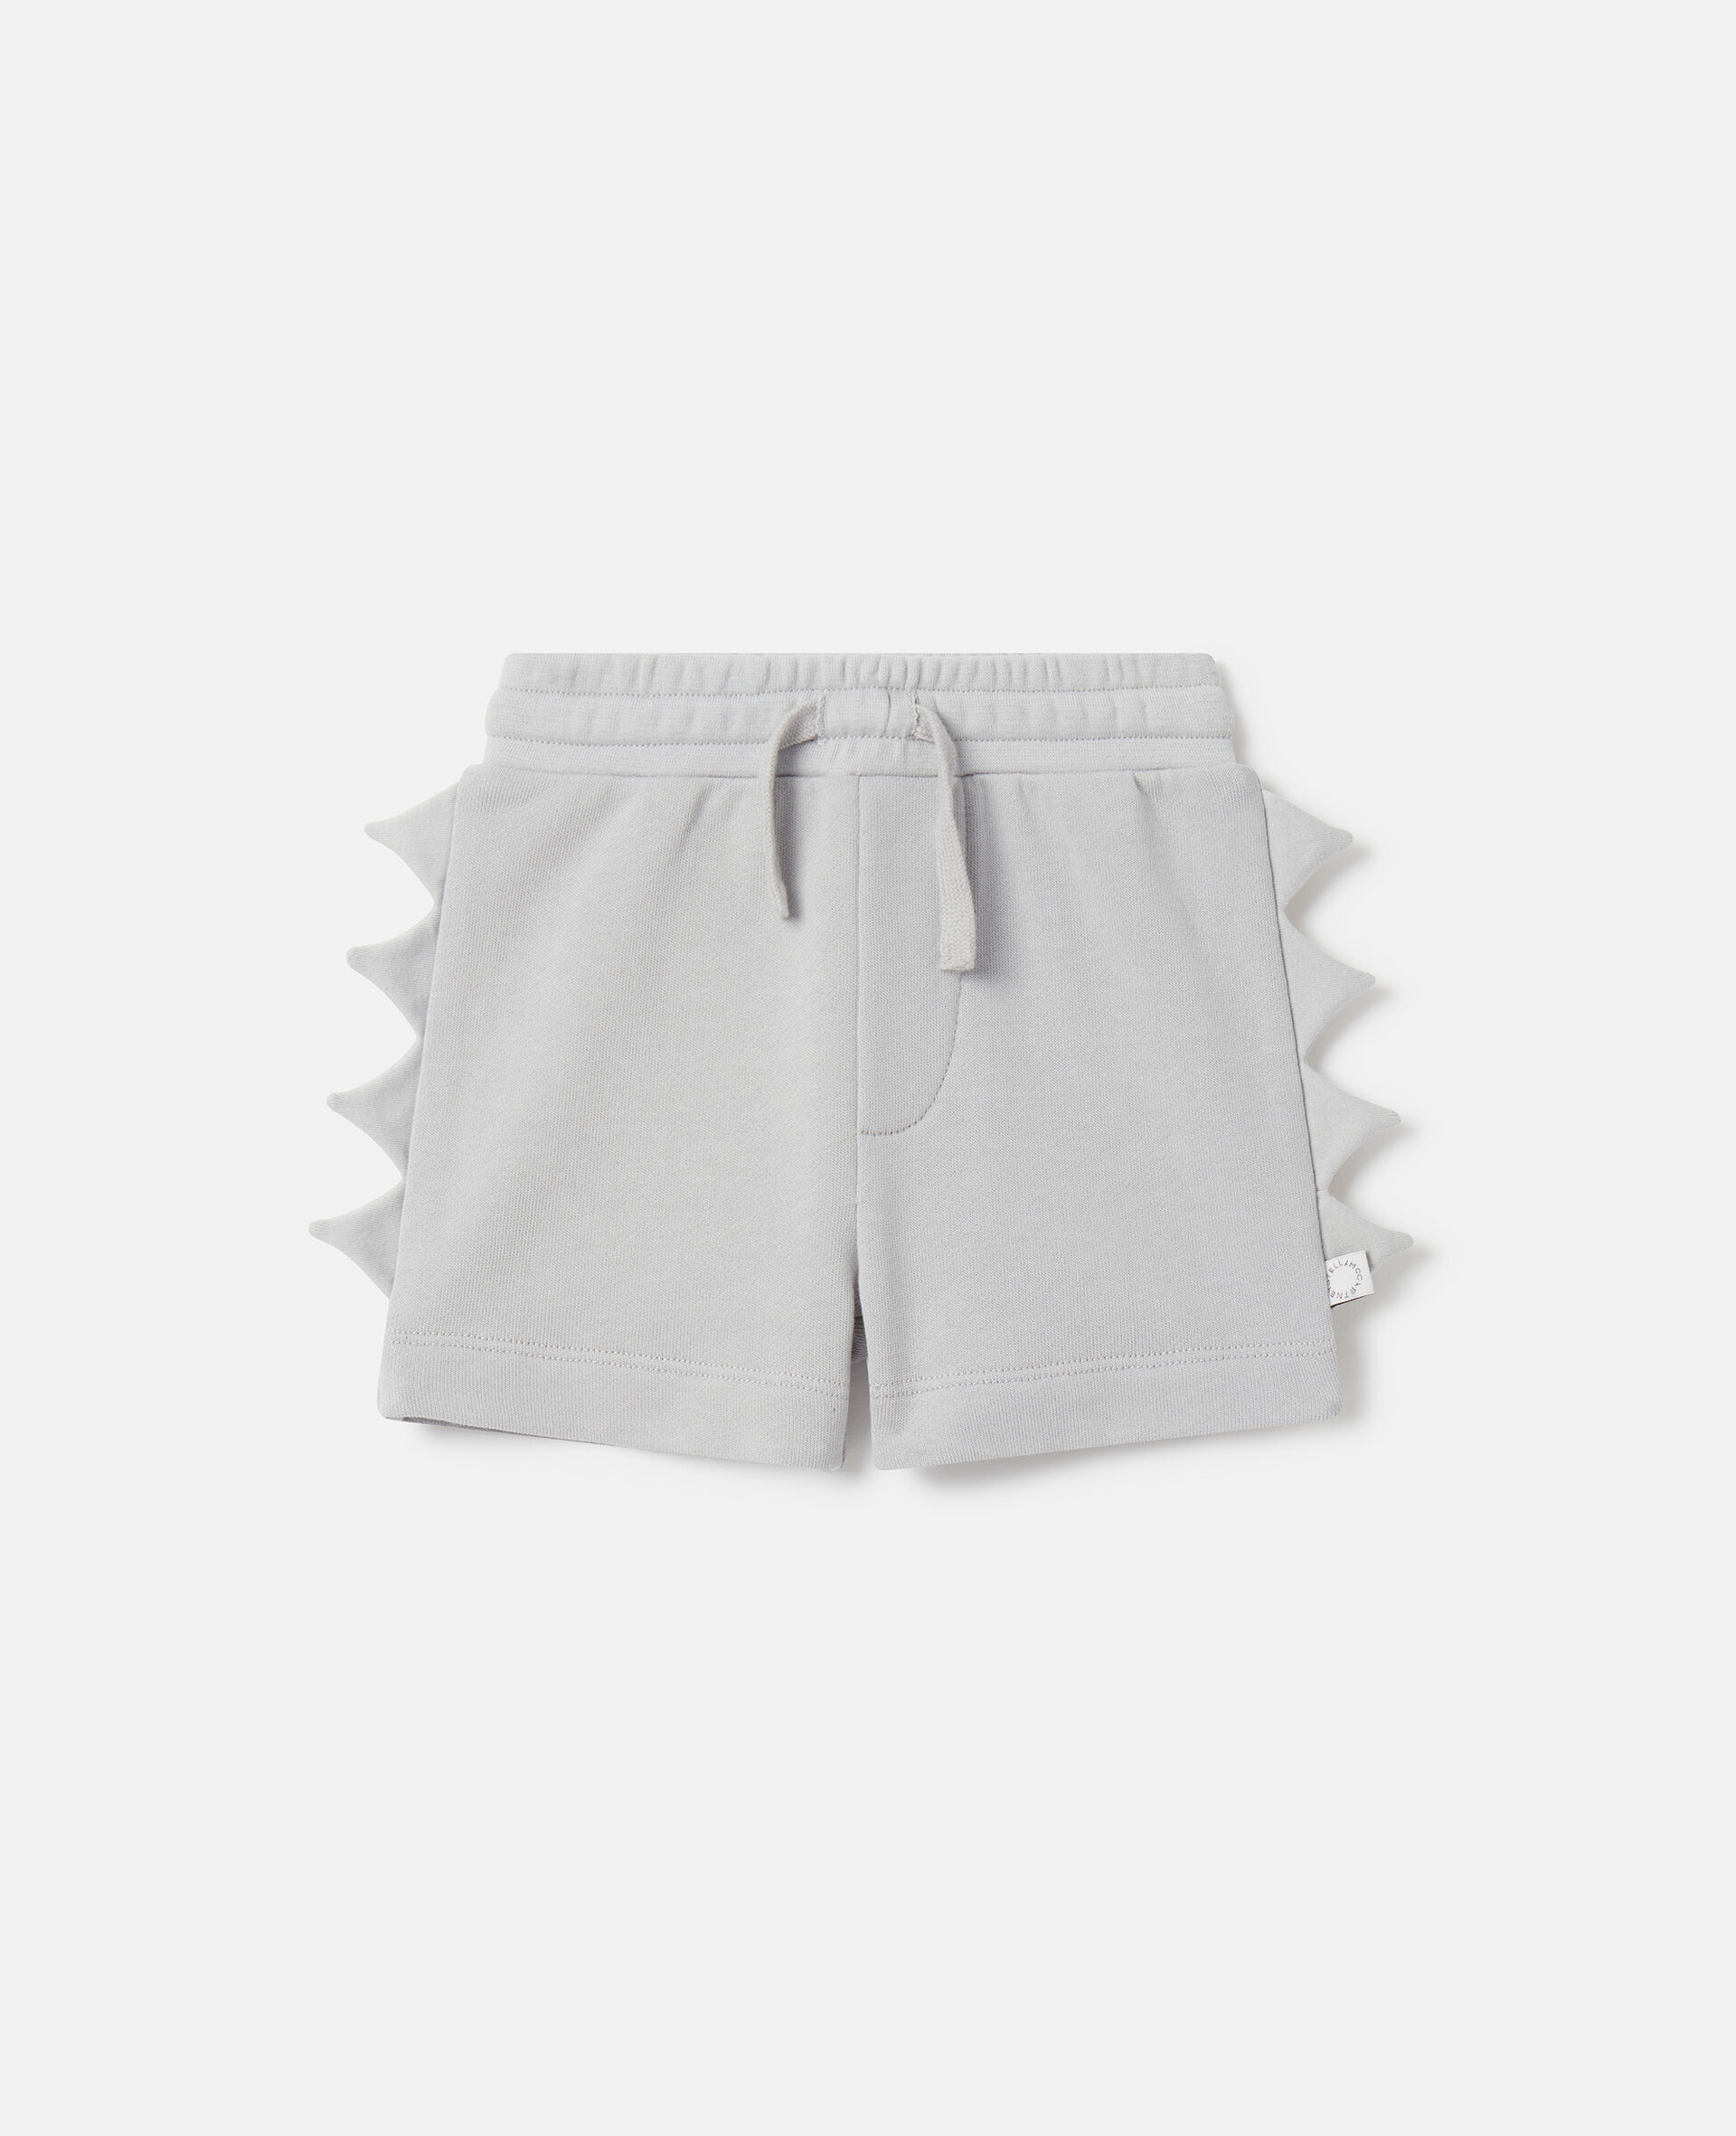 Shark Fin Spike Shorts-Grigio-medium